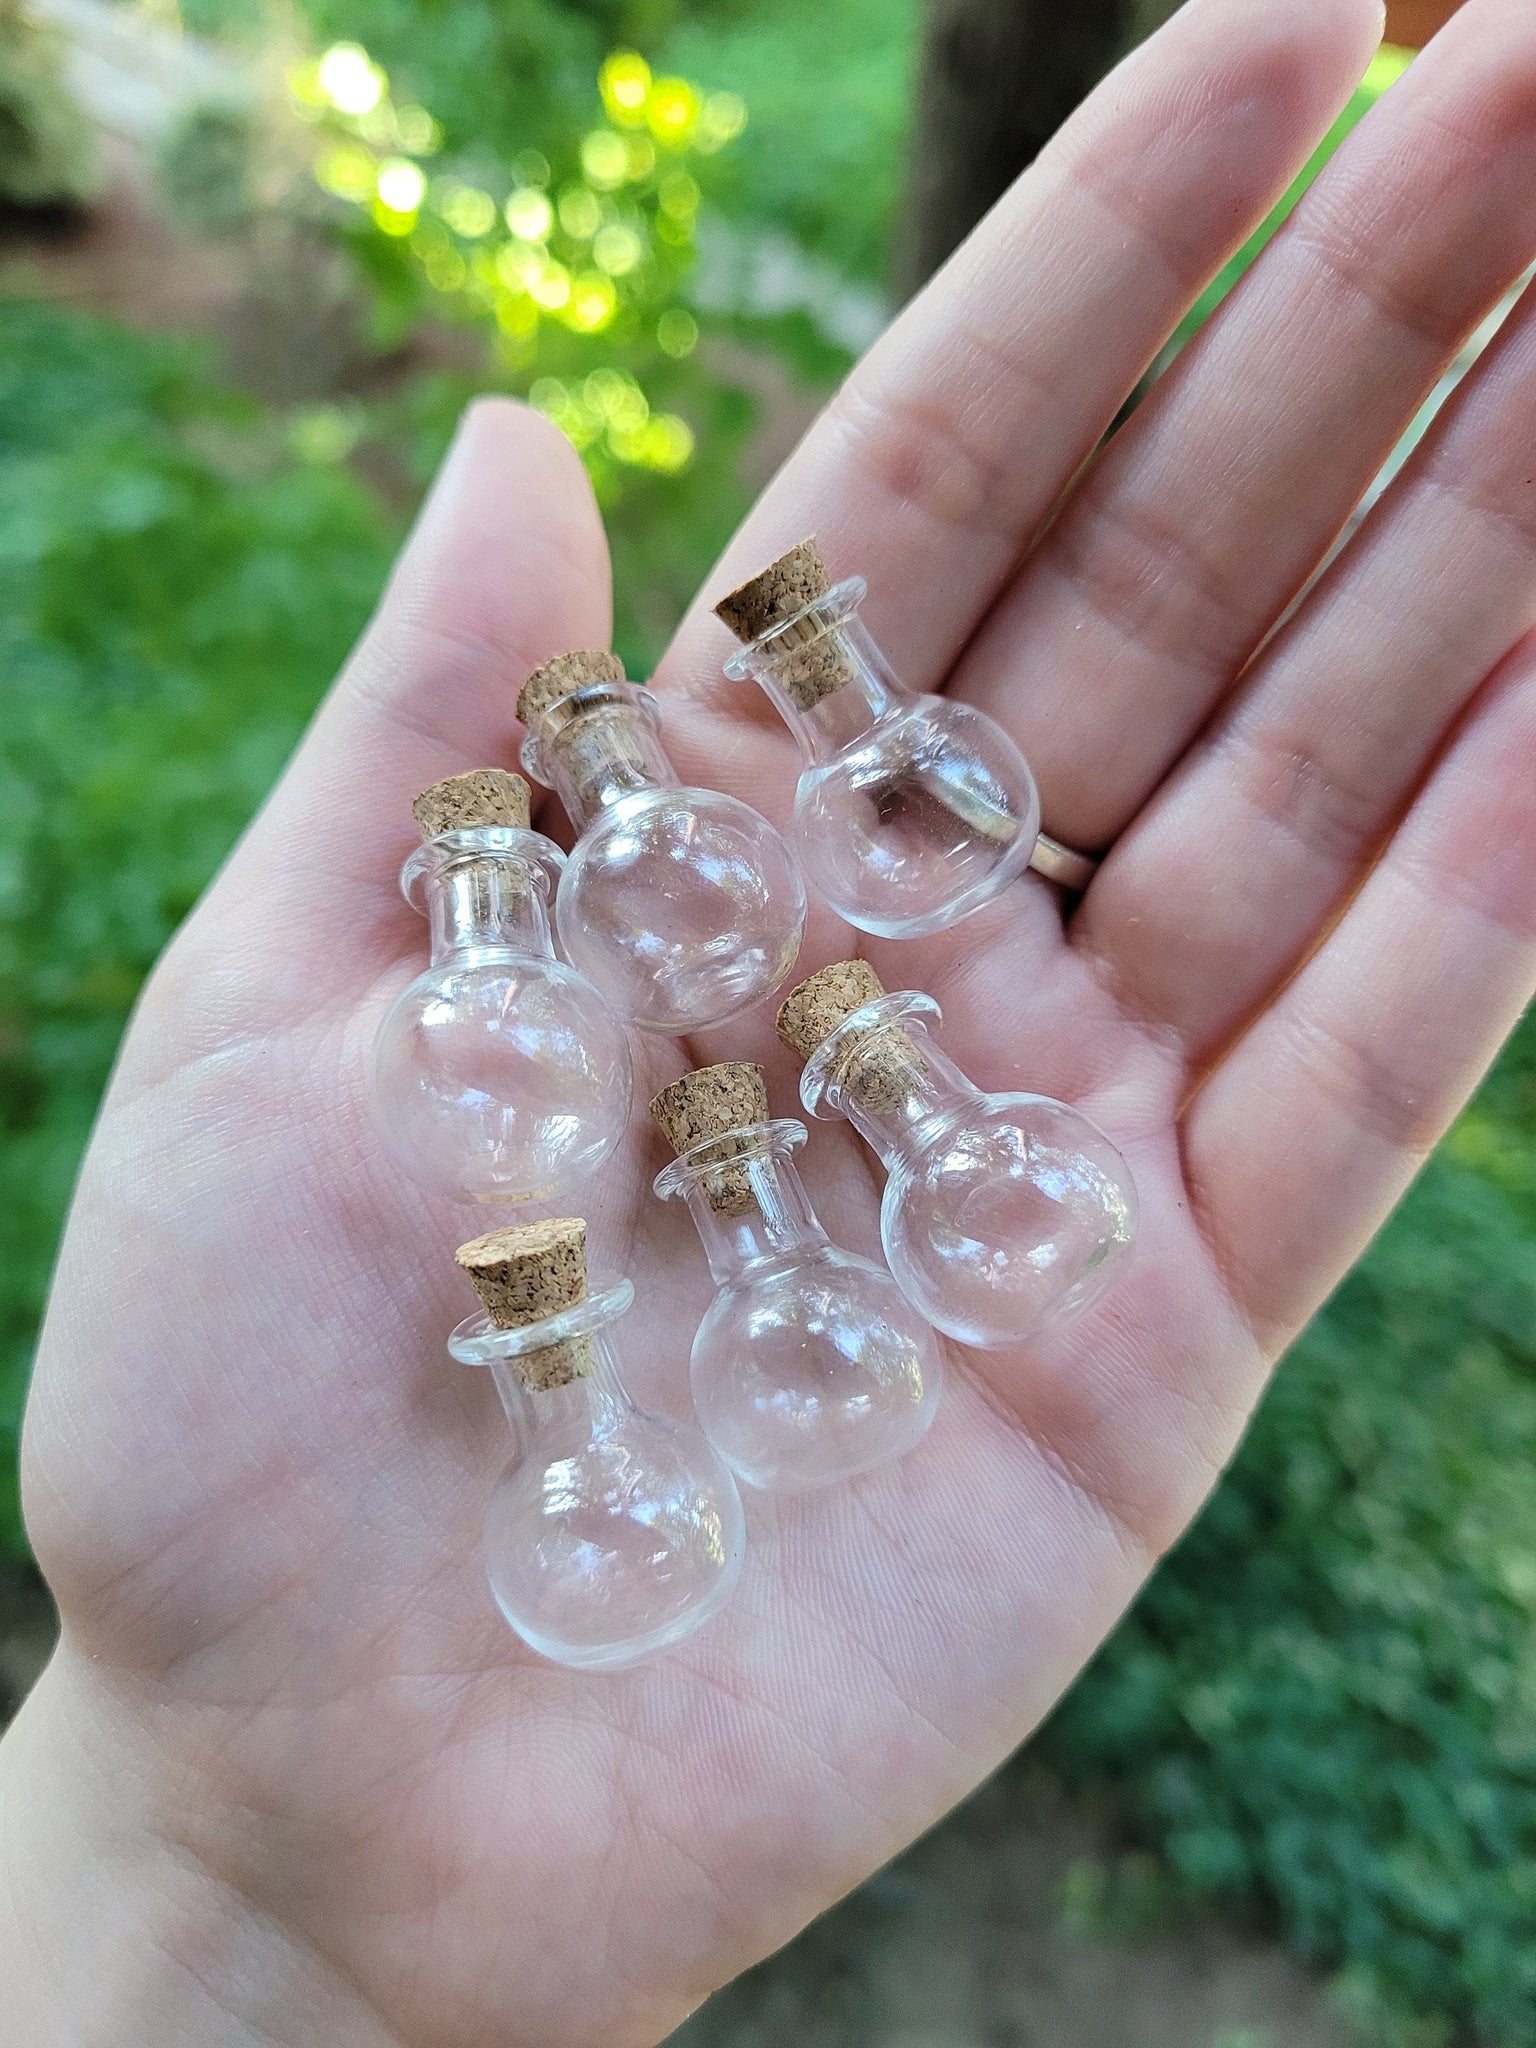 Mini Potion Bottles 6pk - 2ml Glass w/ Cork – Waterbear Wizard